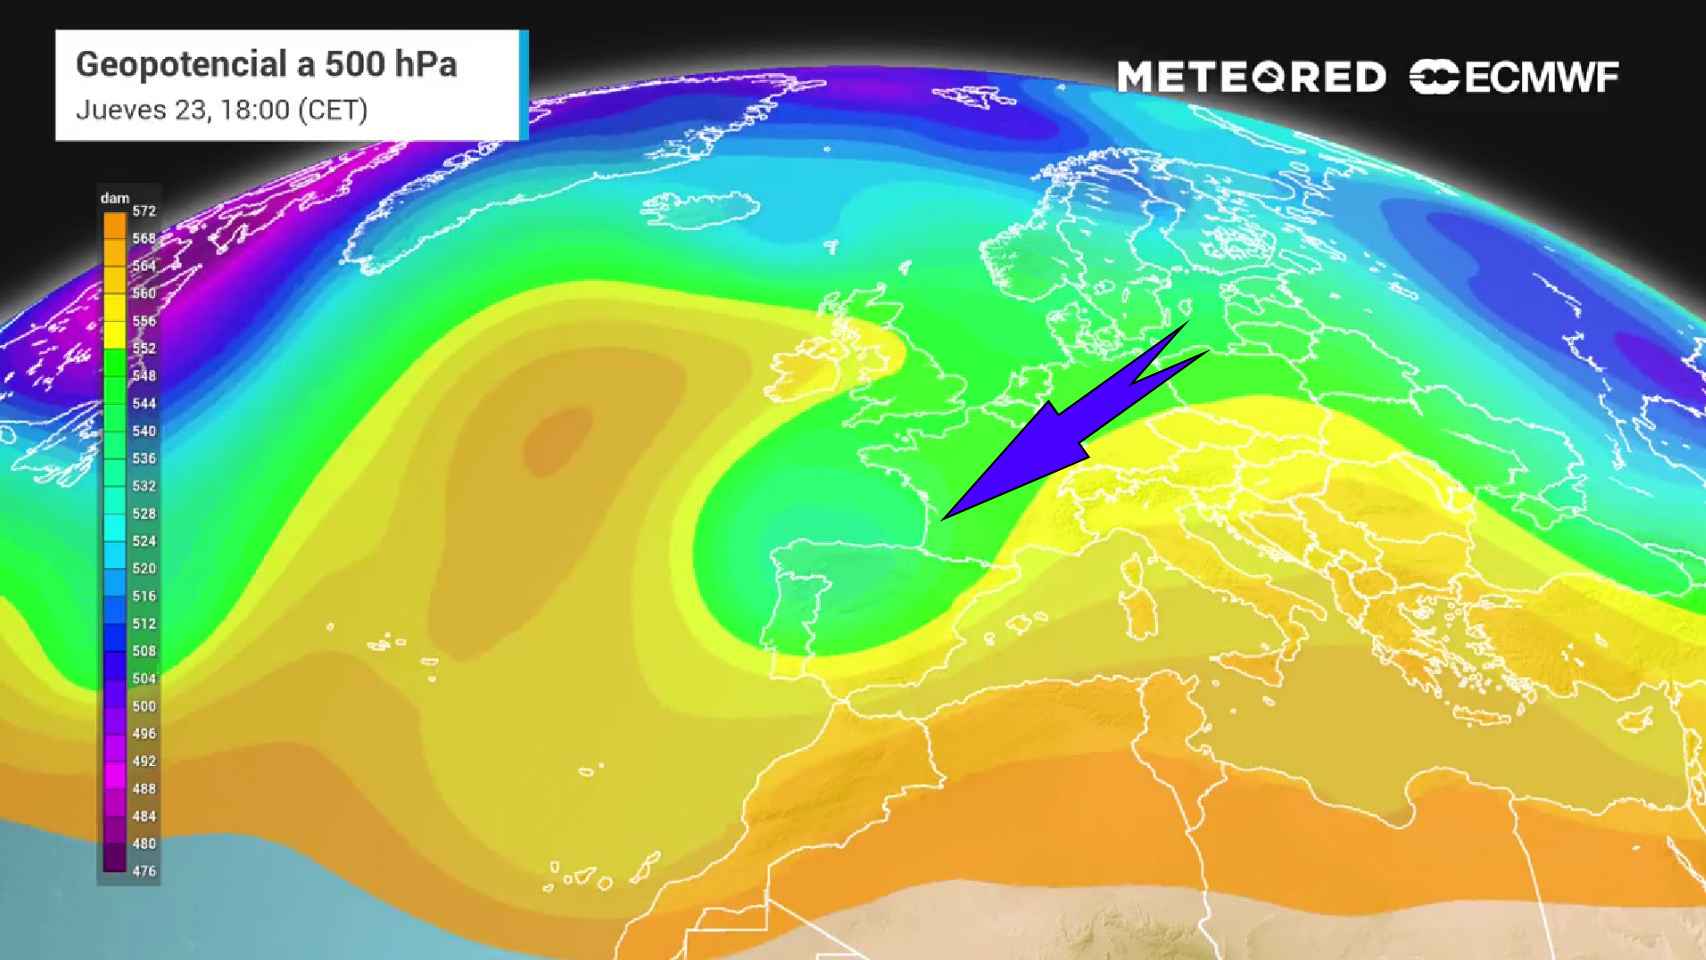 El desplome de bajas presiones y aire frío que afectará a España a mediados de semana. Meteored.